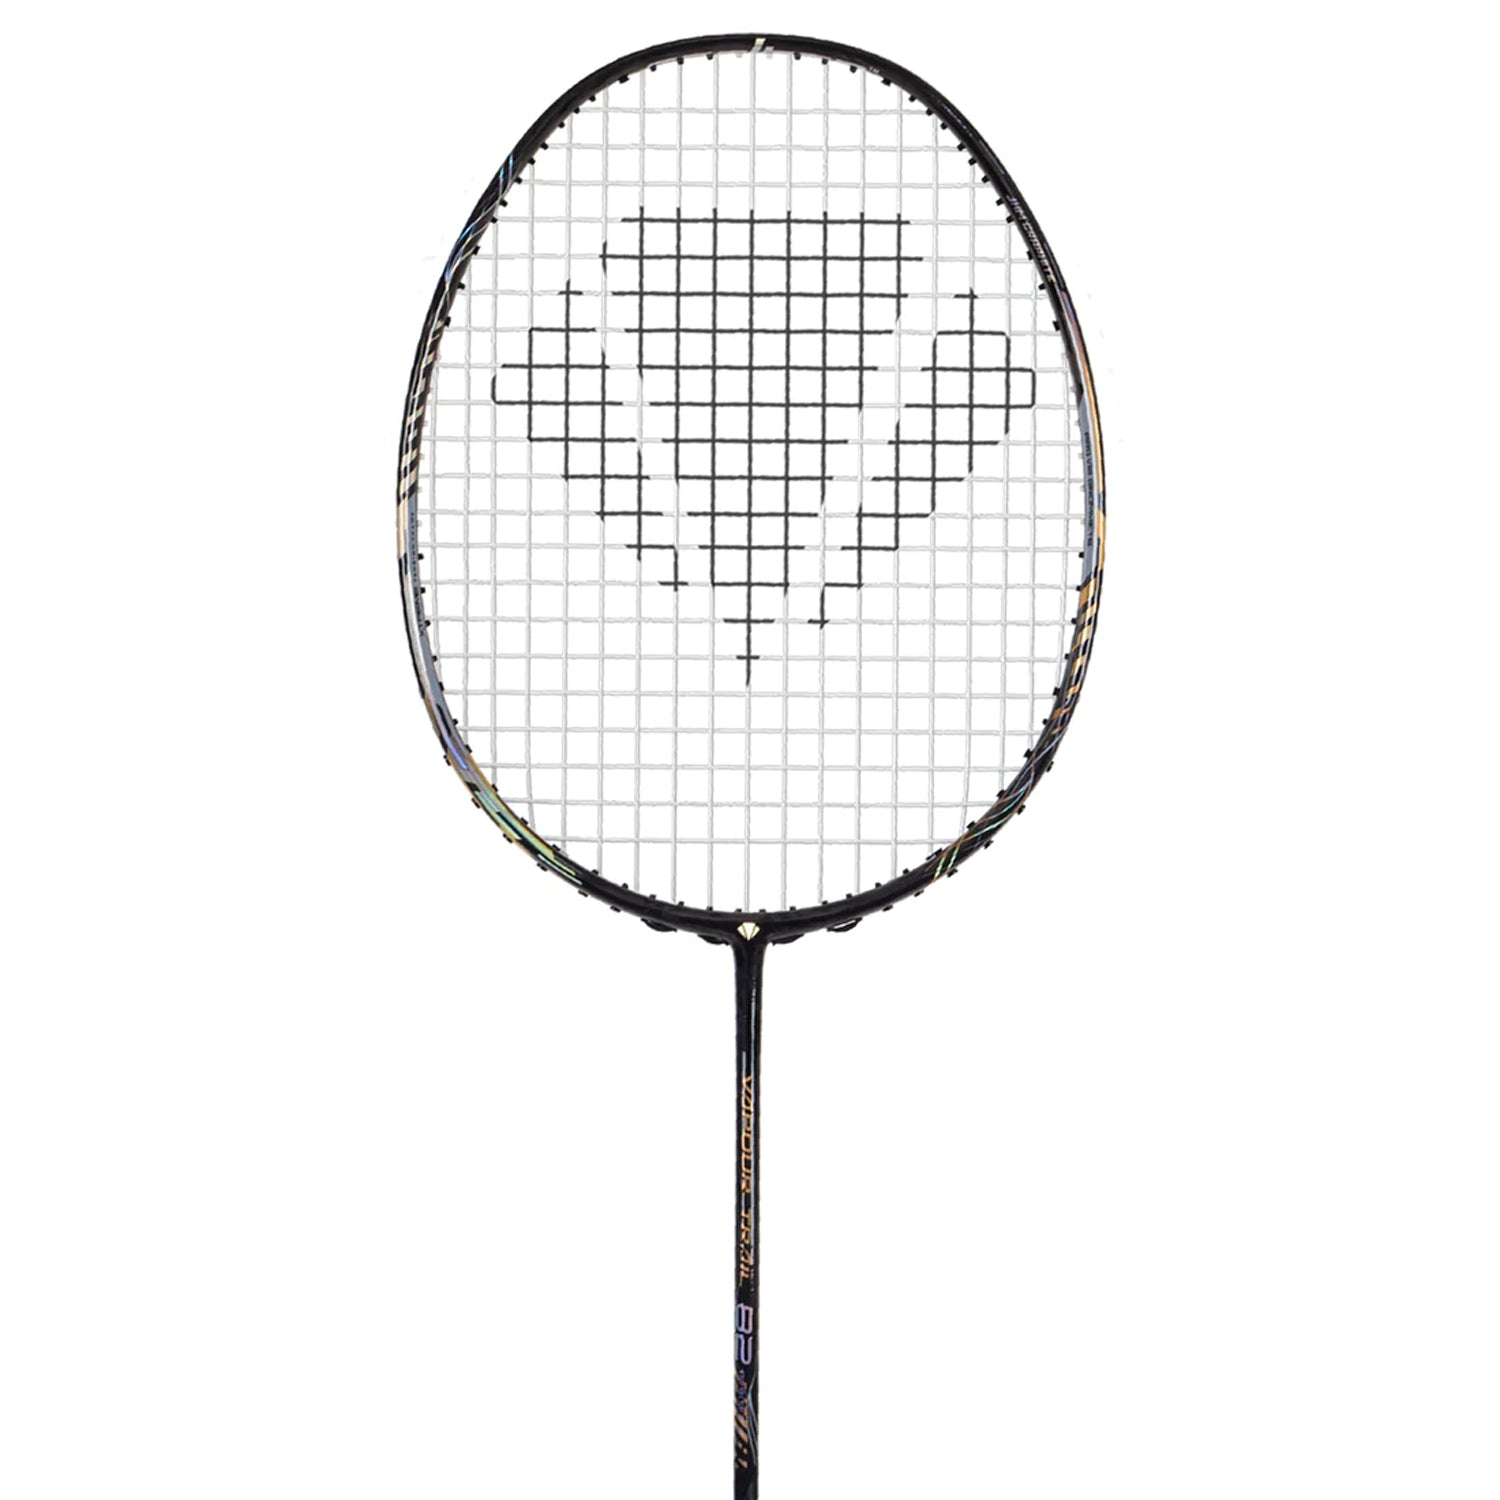 Carlton Vapour Trail 82 Pyrite Unstrung Badminton Racquet, G6- Black - Best Price online Prokicksports.com